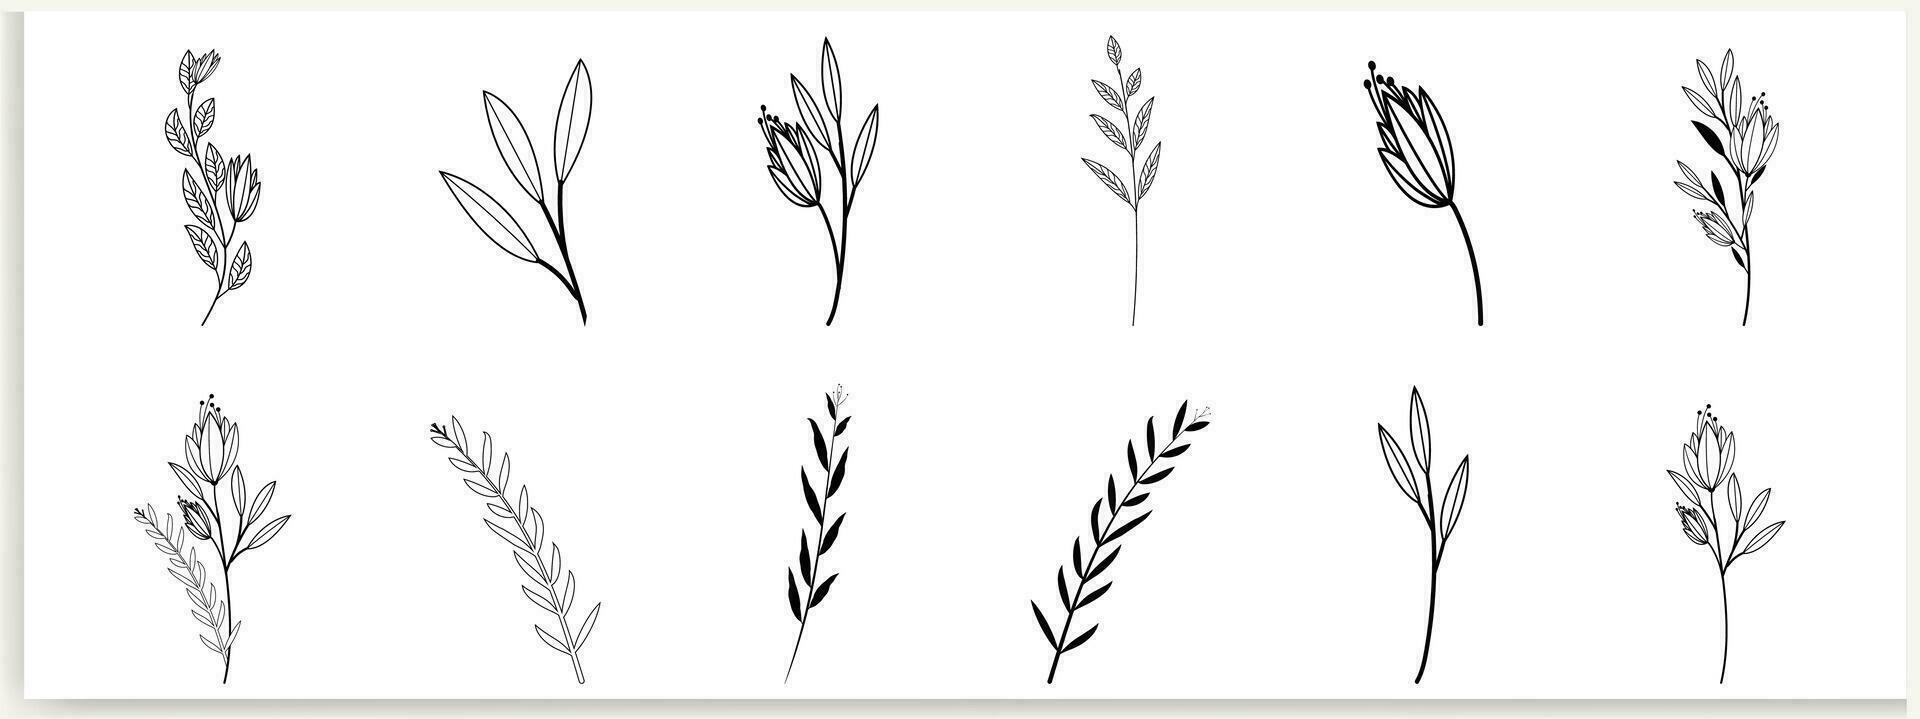 botanico astratto linea arte, disegnato a mano mazzi di fiori di erbe aromatiche, fiori, foglie, e rami, vettore illustrazione